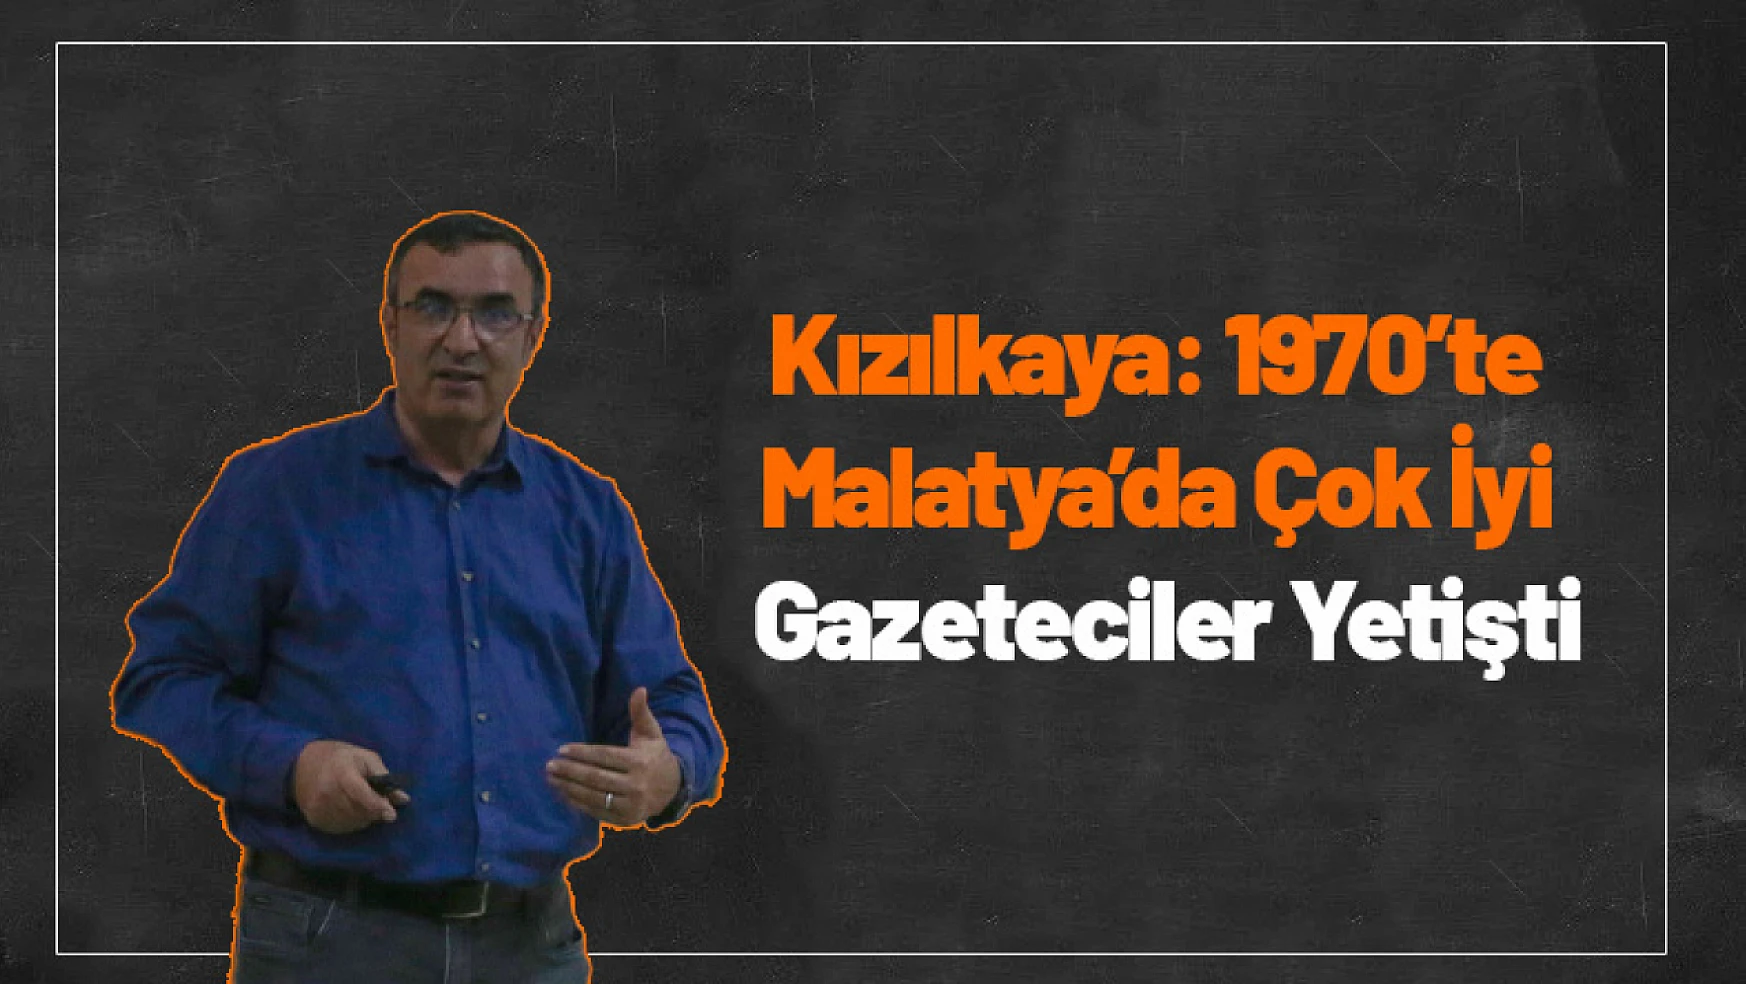 Kızılkaya: 1970'li yıllarda Malatya'da Çok İyi Gazeteciler Yetişmeye Başlıyor...